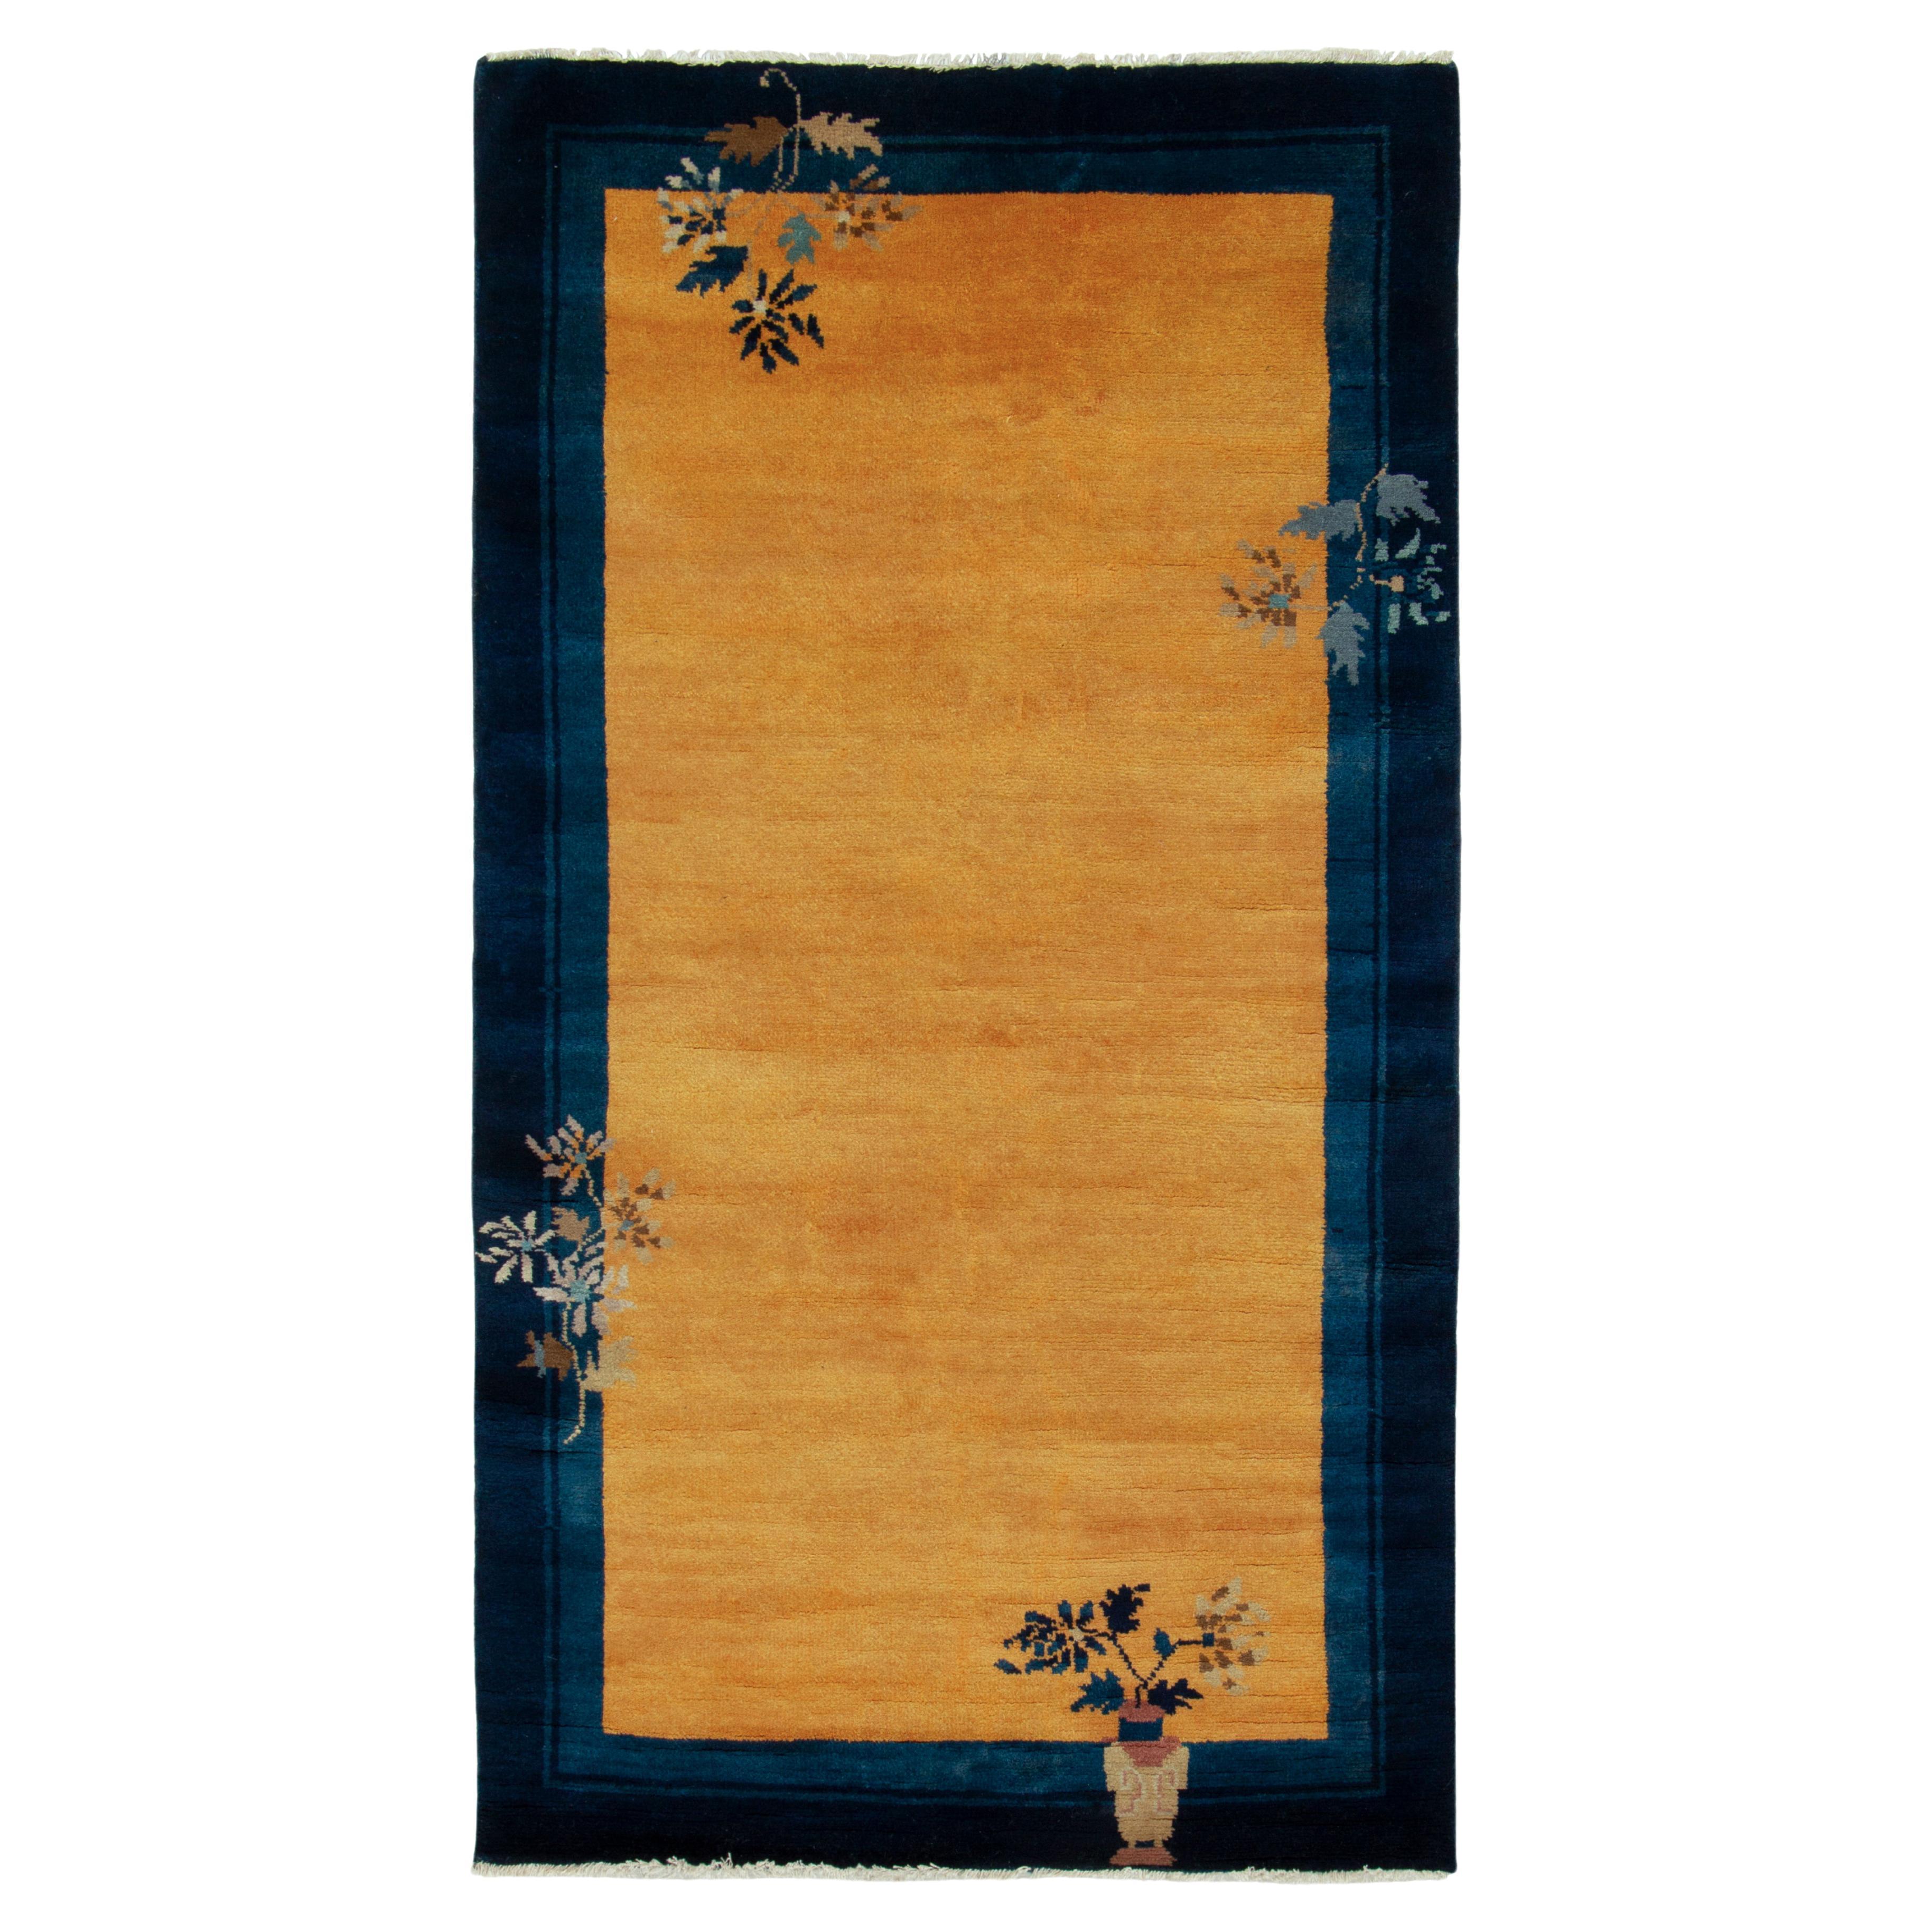 Chinesischer Deko-Teppich im Vintage-Stil in Gold, Blau und Braun mit Blumenmuster von Teppich & Kelim